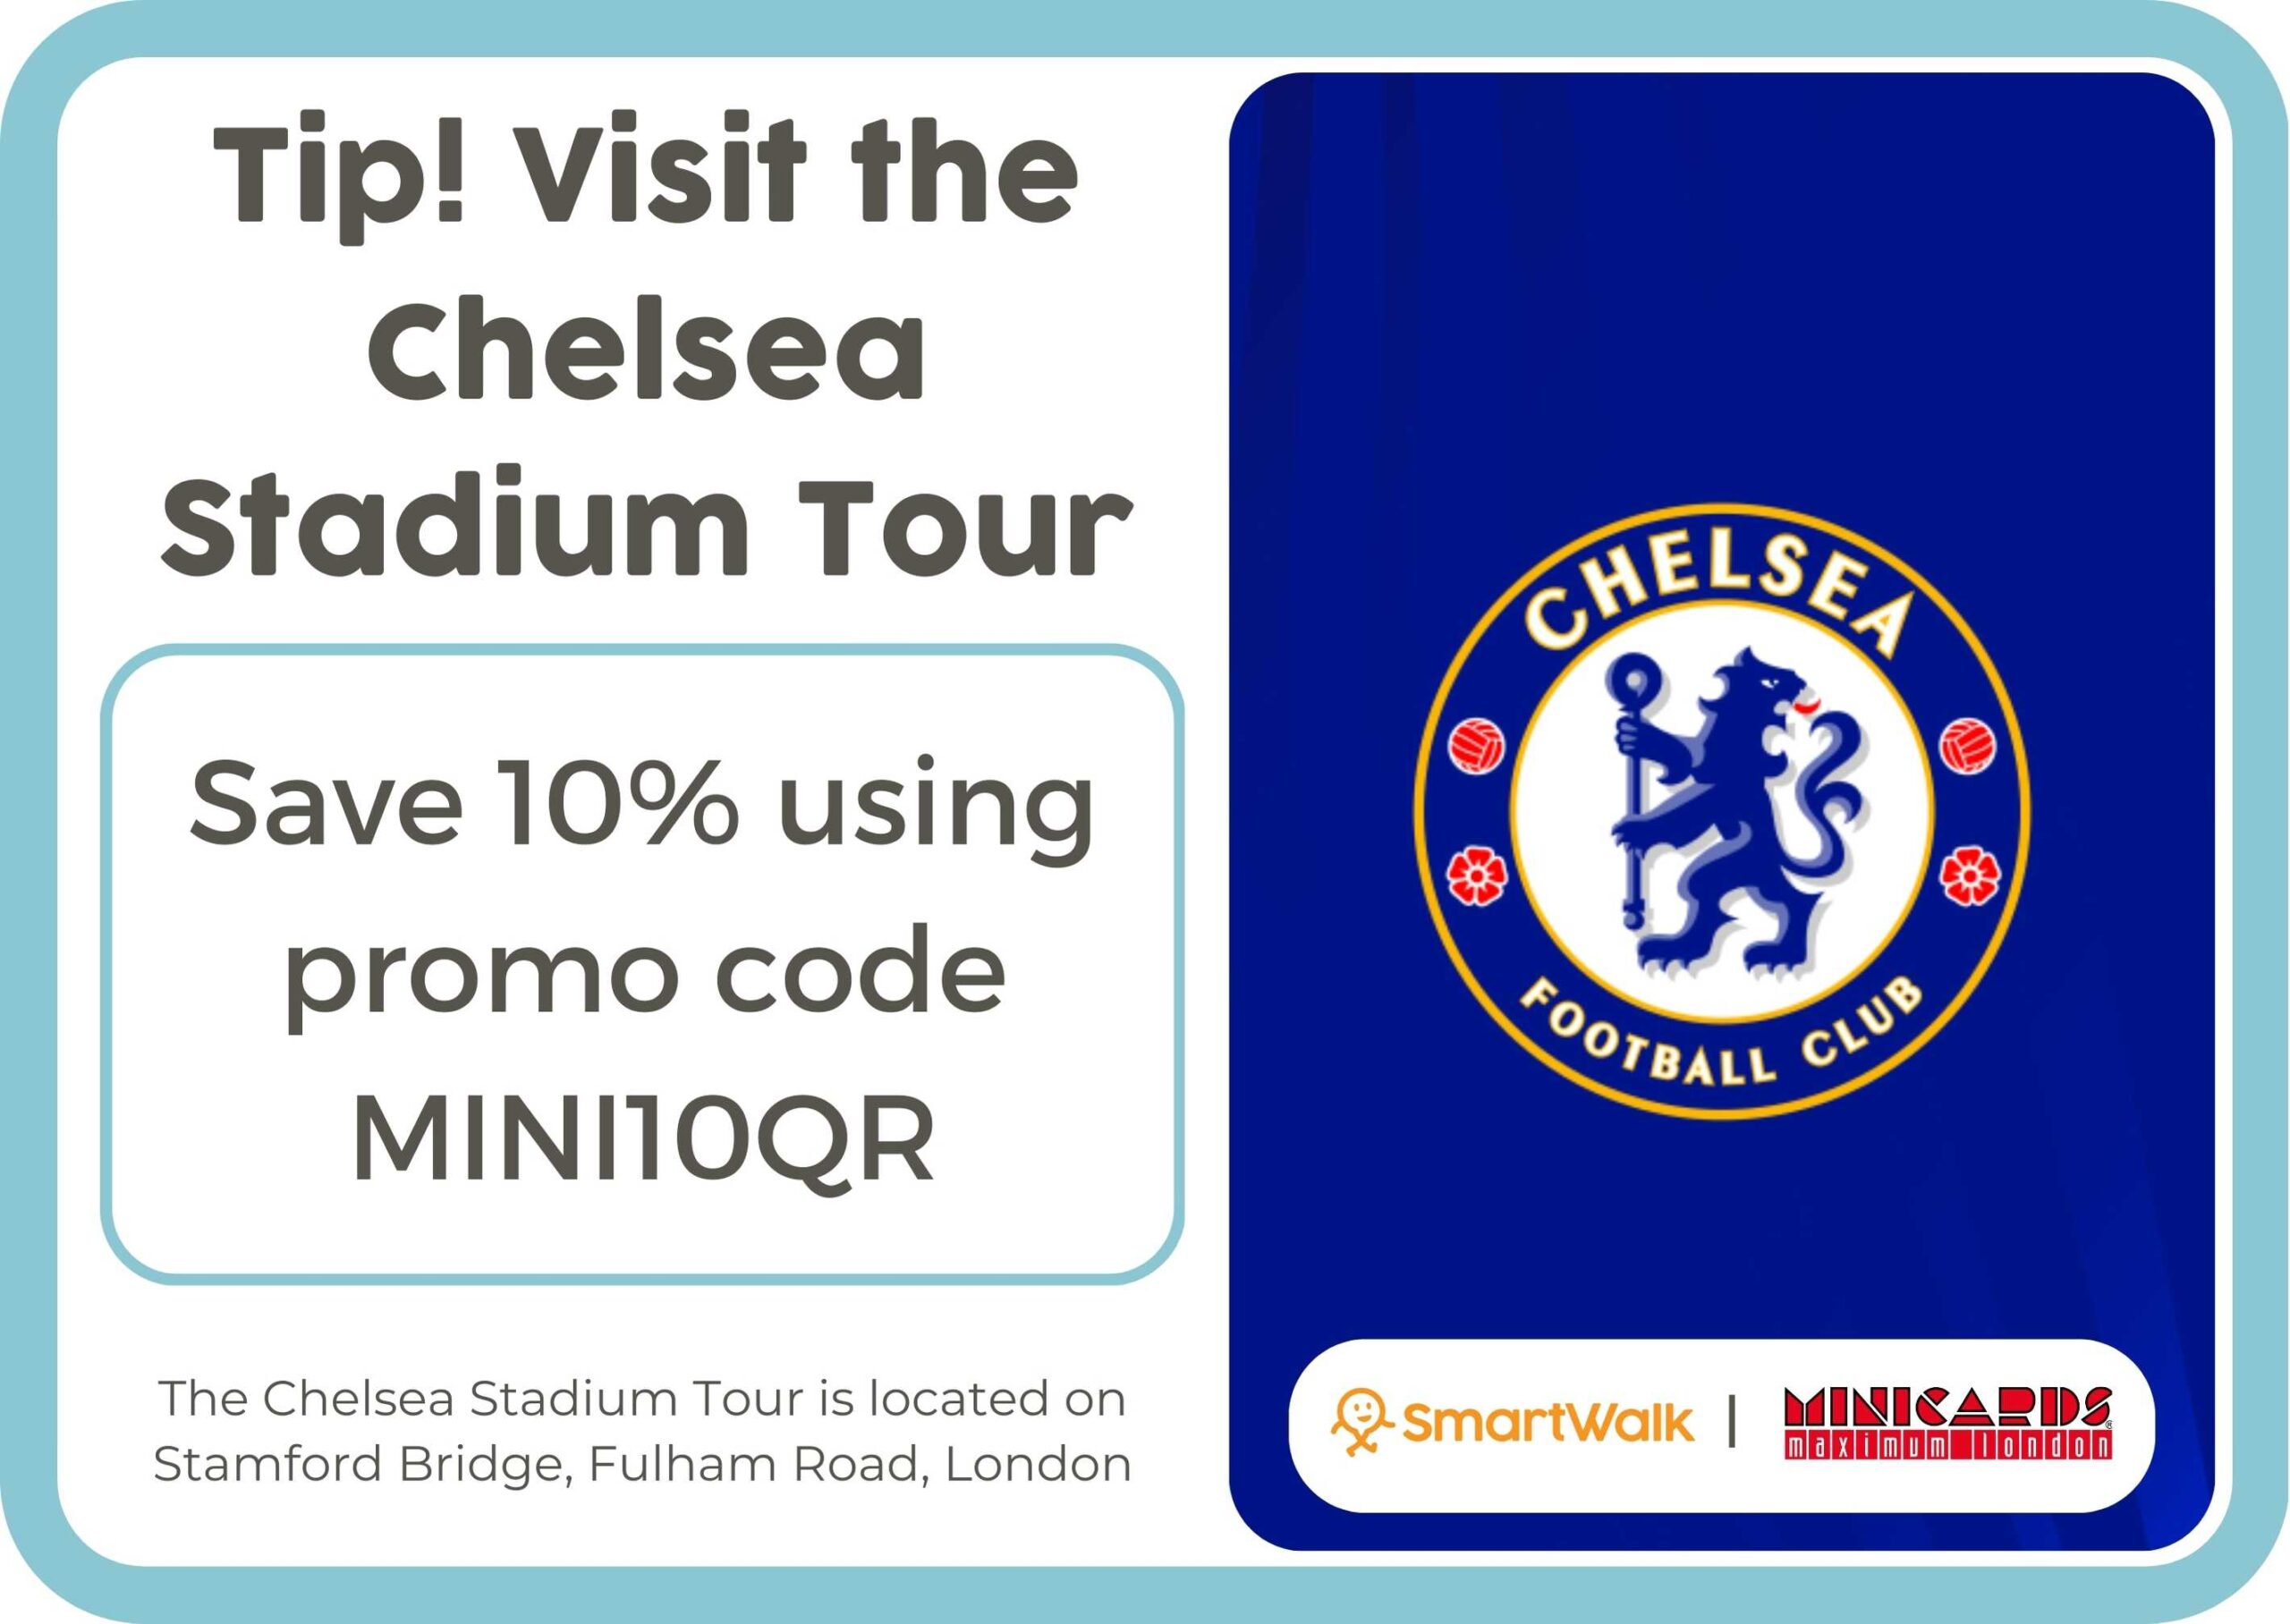 2. Chelsea stadium tour